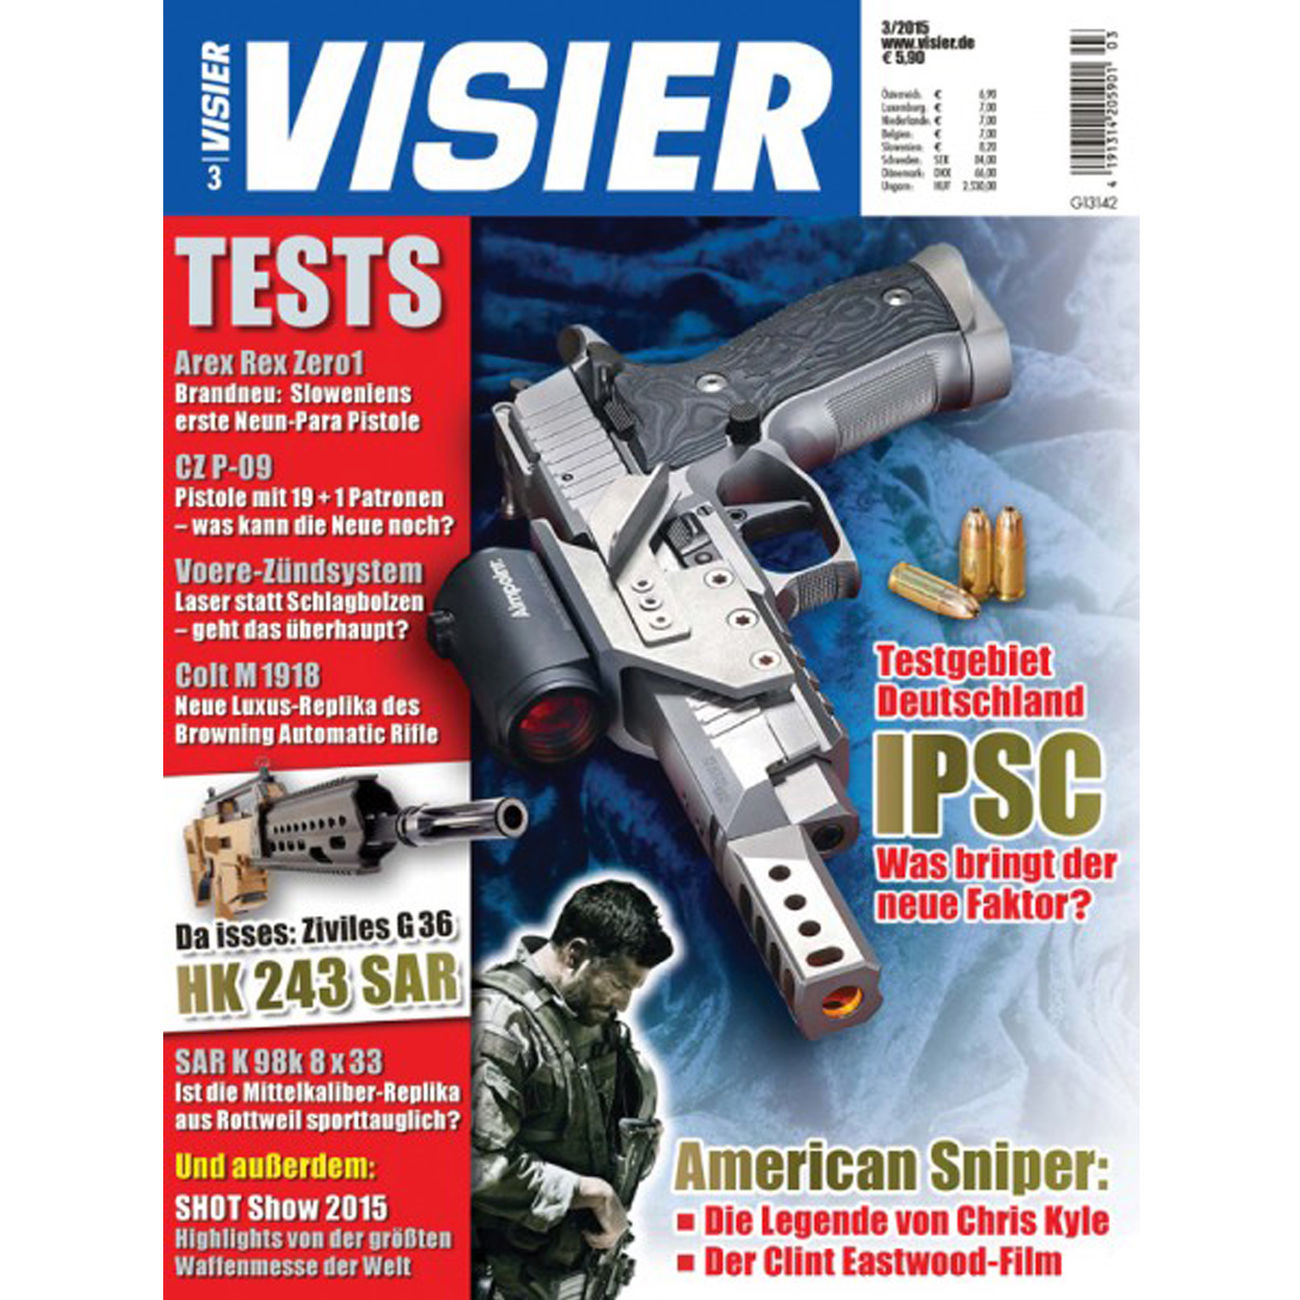 Visier - Das internationale Waffenmagazin 03/2015